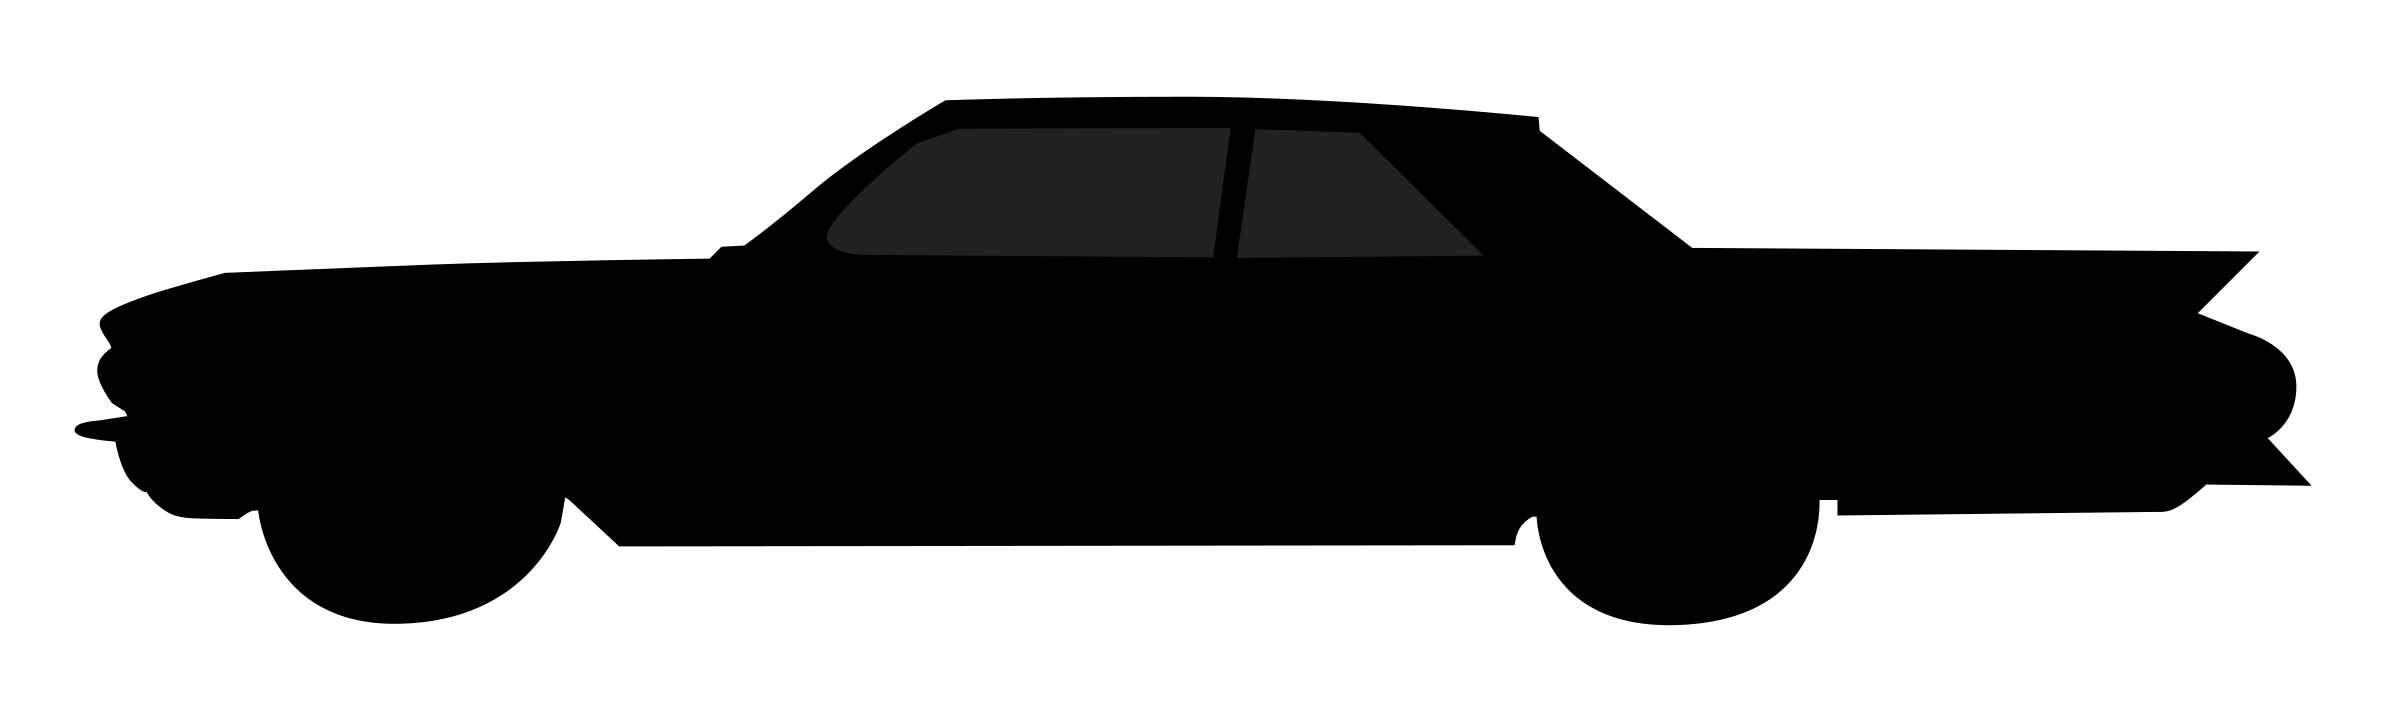 Car Silhouette Clipart 